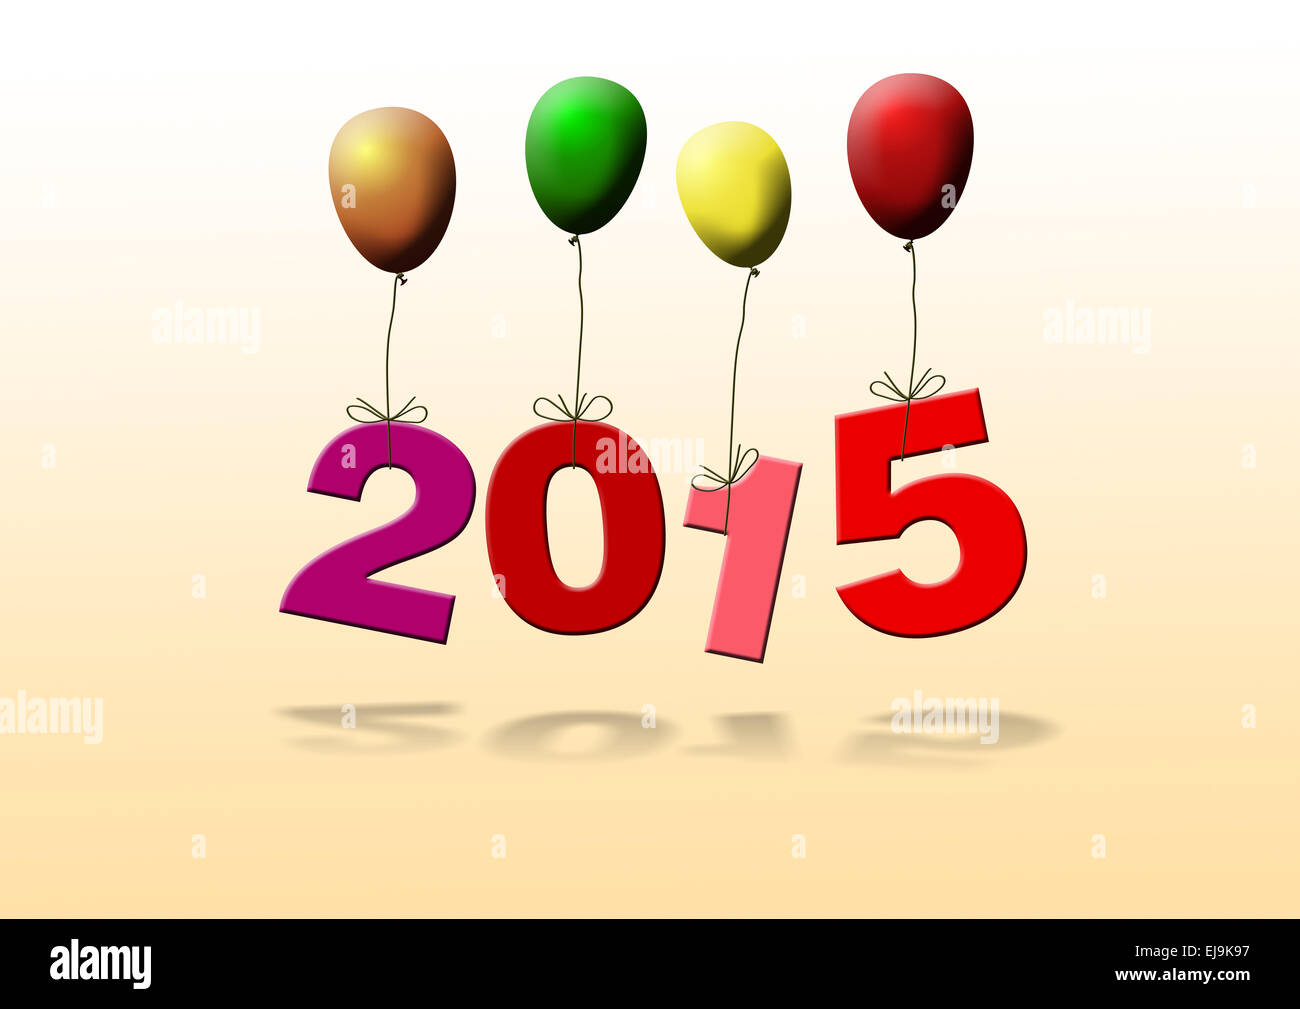 illustration of year 2015 on balloons Stock Photo